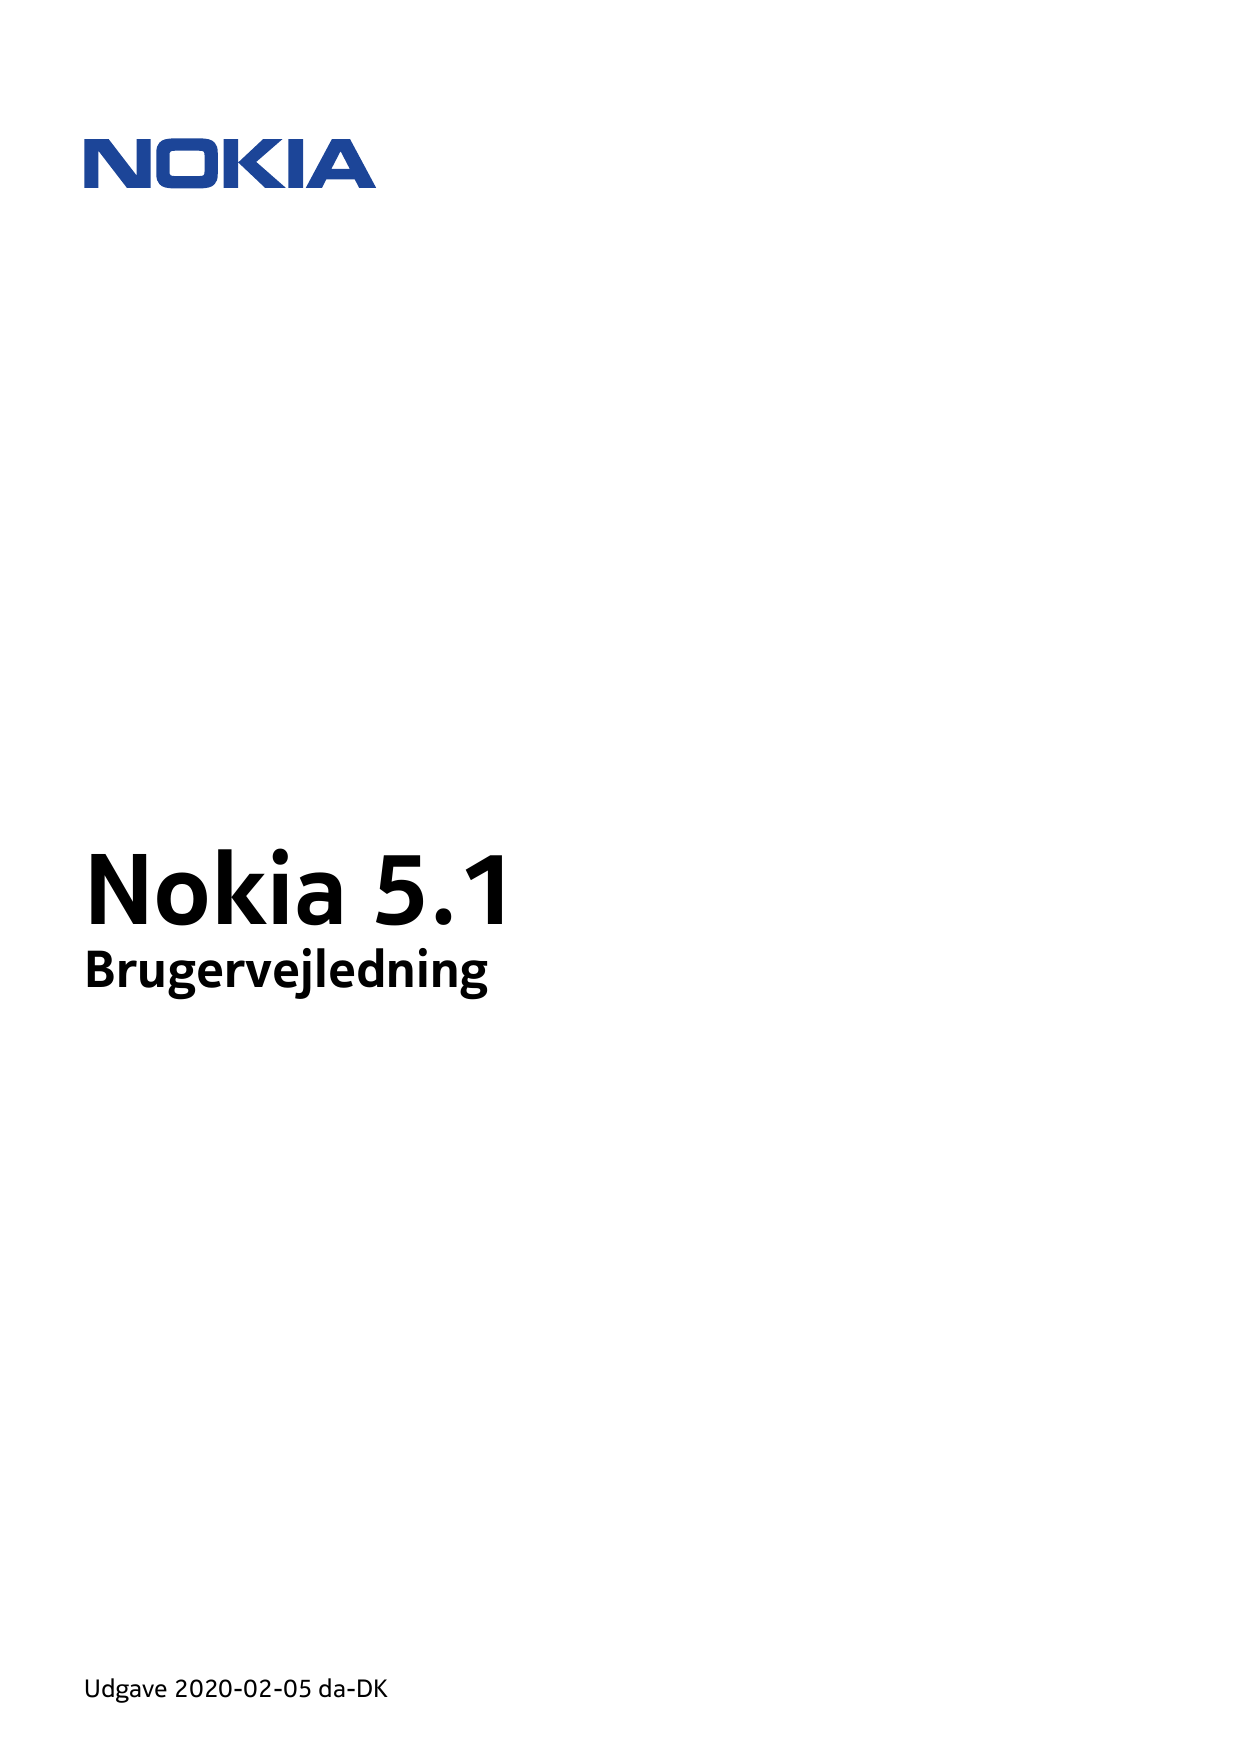 Nokia 5.1BrugervejledningUdgave 2020-02-05 da-DK